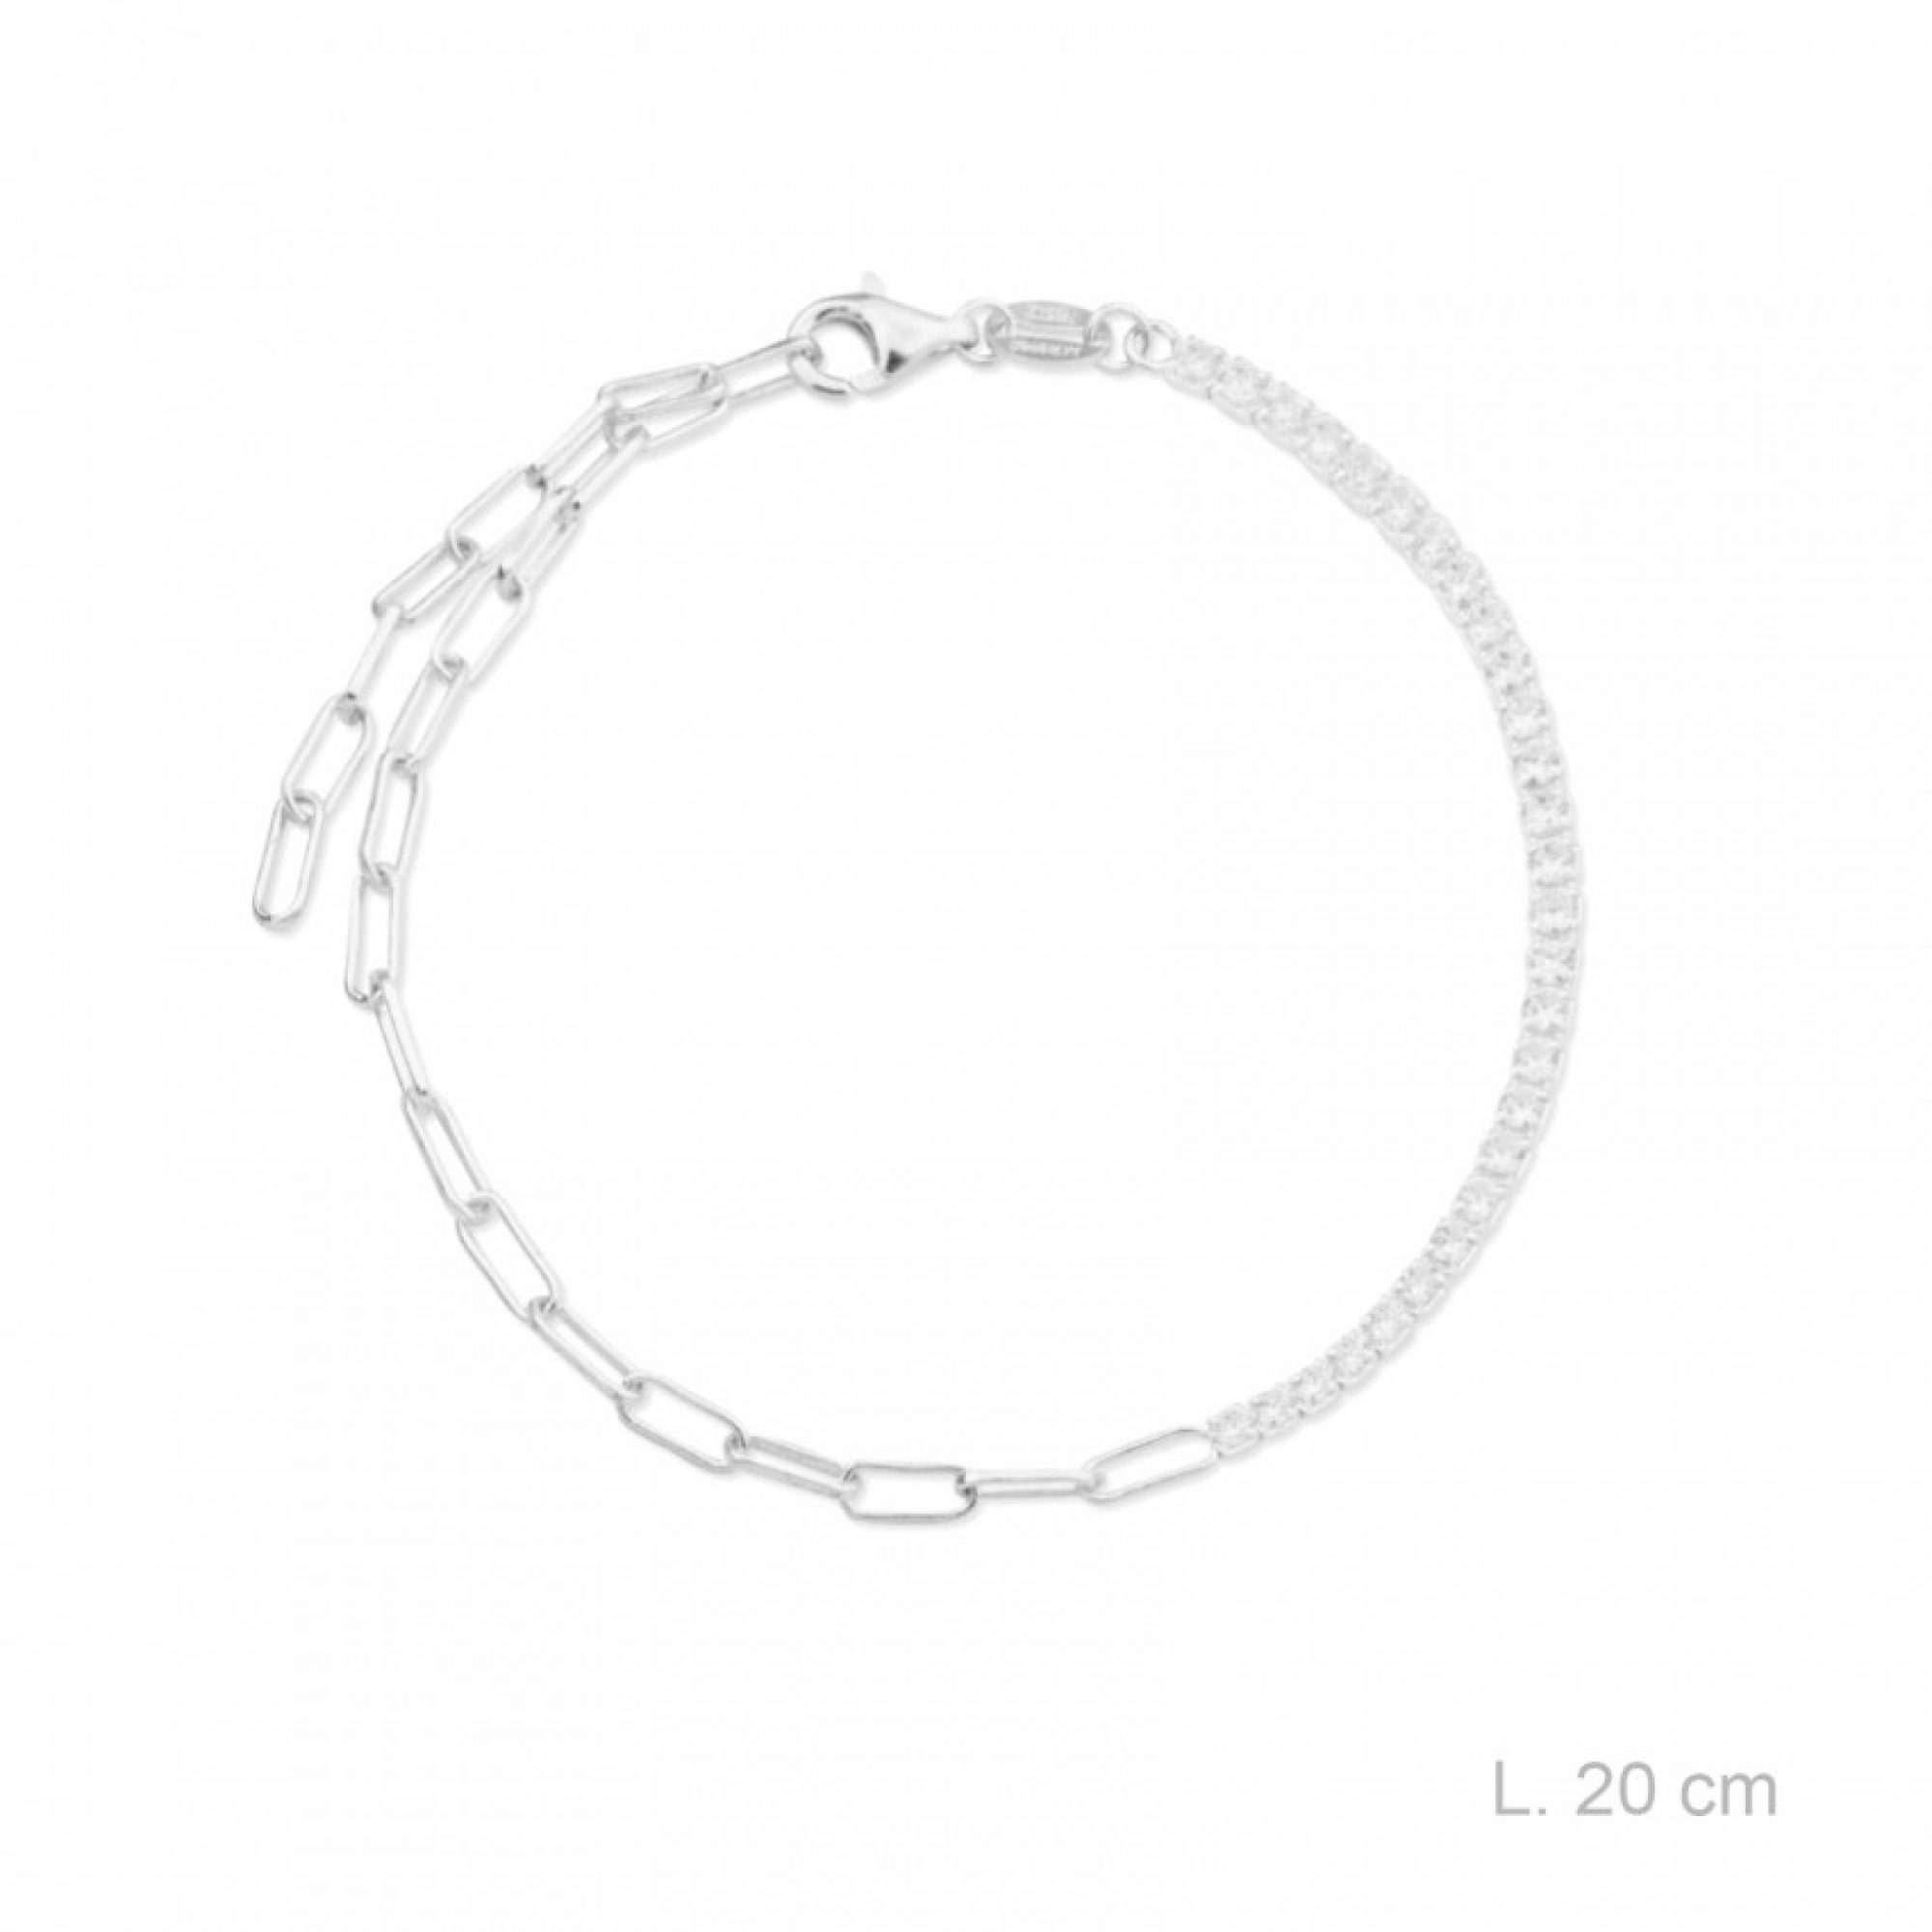 Bracelet with zircon stones